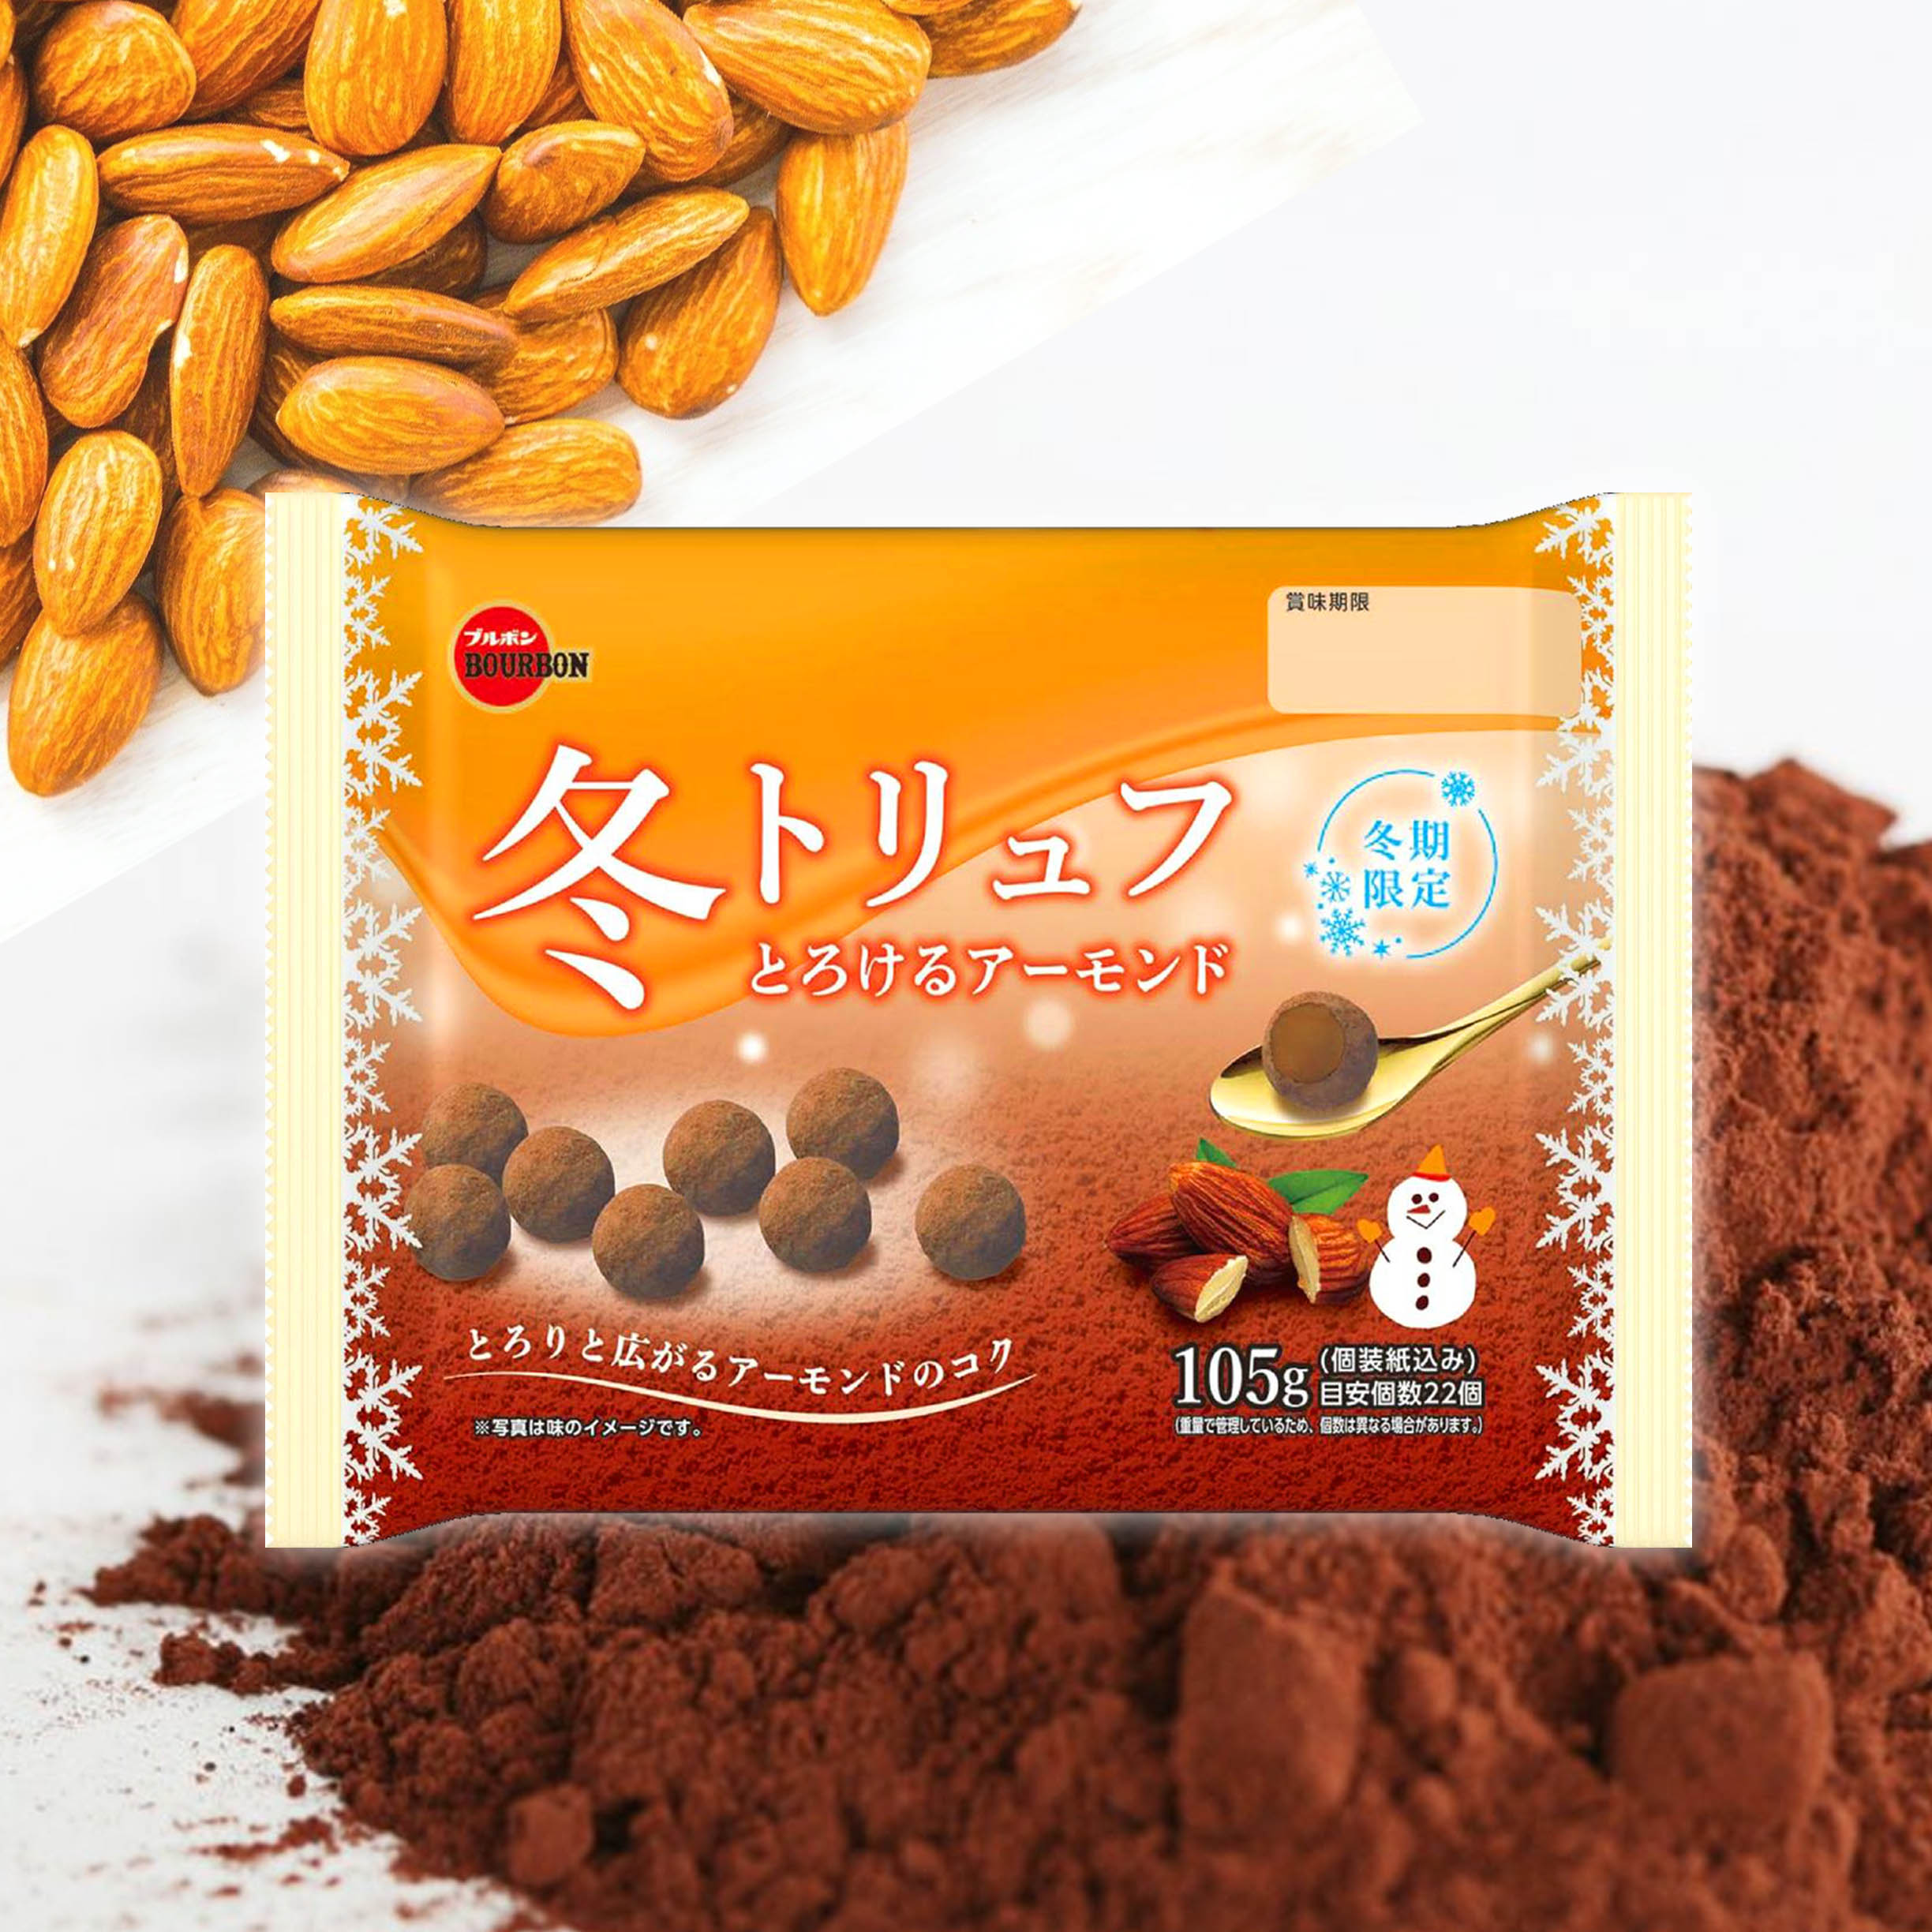 濃郁杏仁風味巧克力 22入-BOURBON 日本進口製造